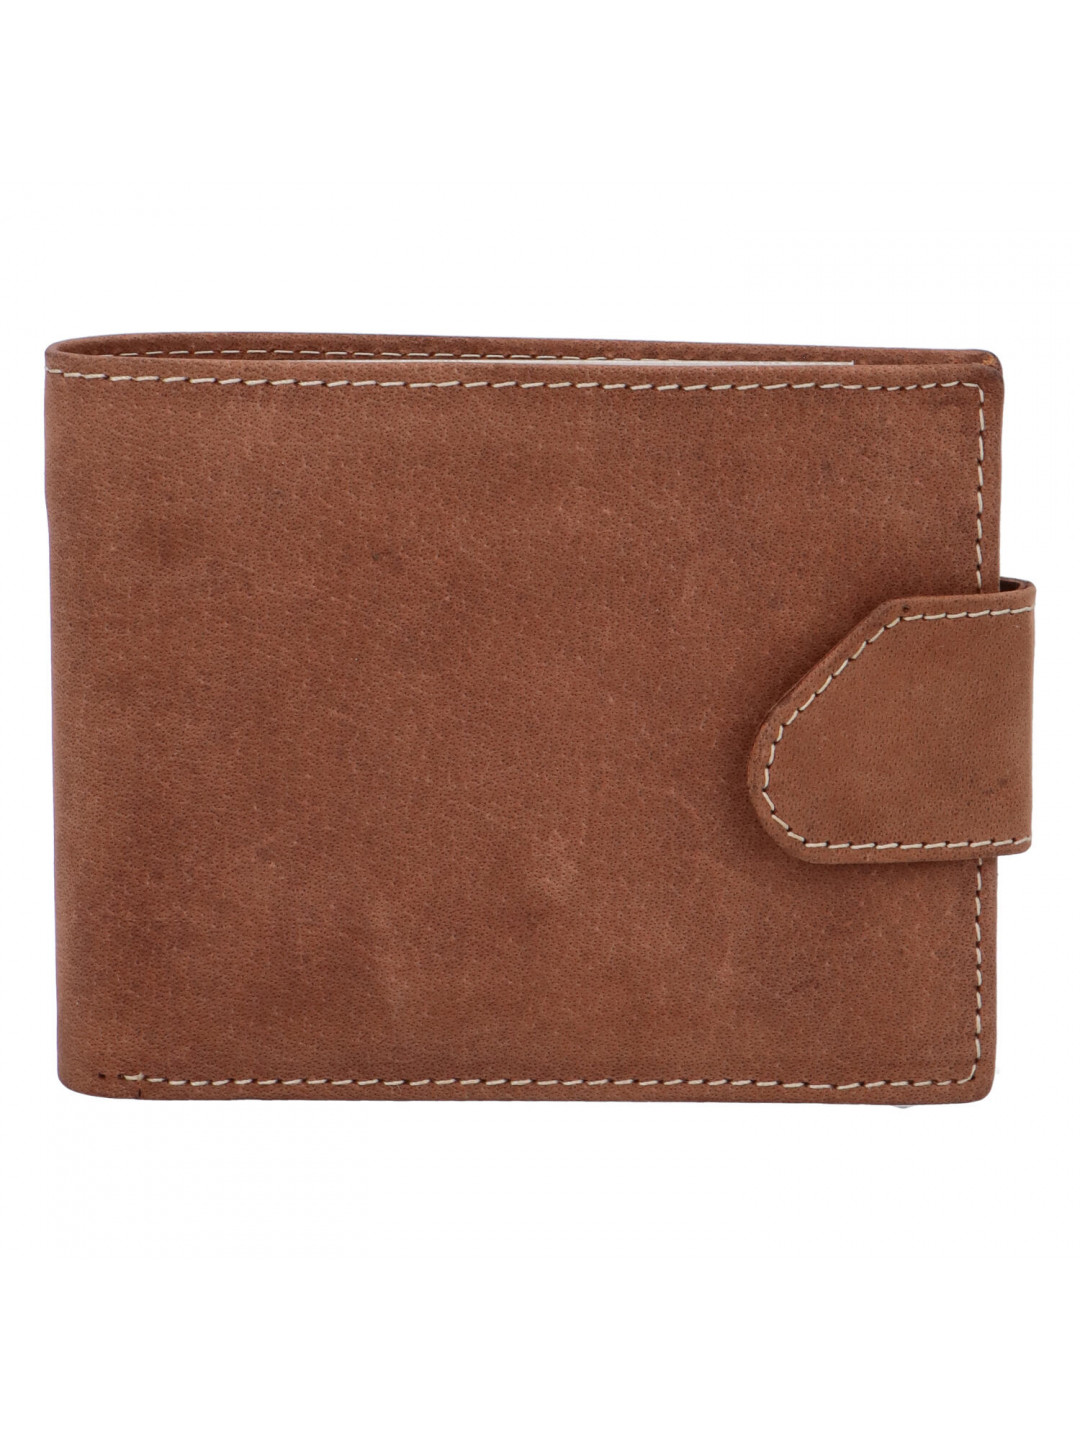 Broušená pánská hnědá kožená peněženka – Tomas 76VT